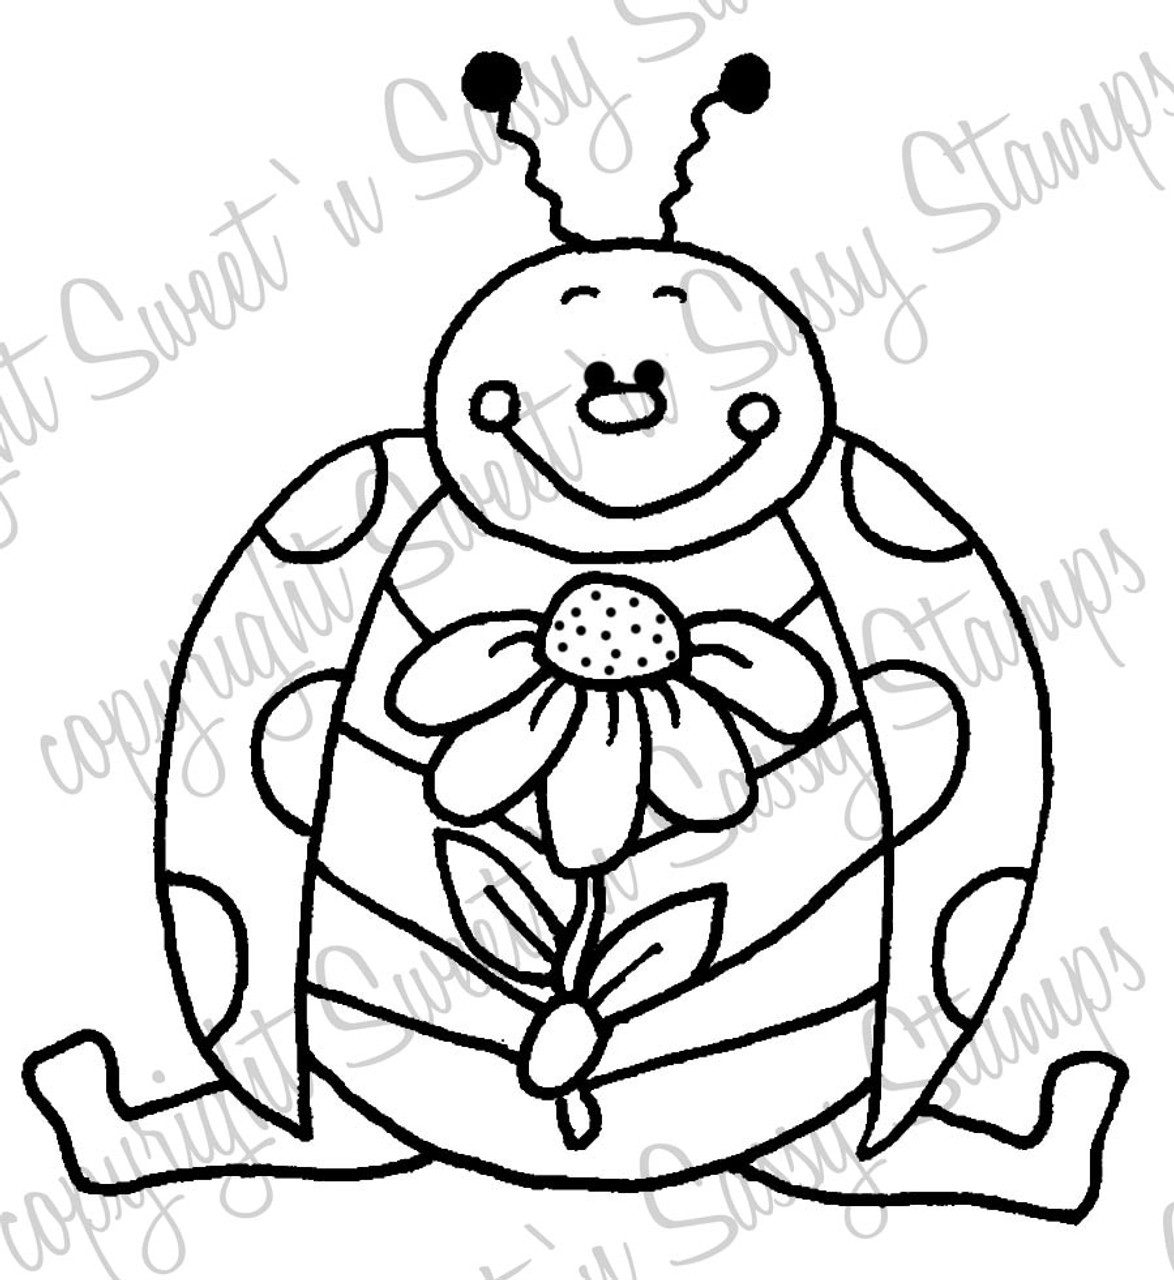 A flower for you ladybug digital stamp